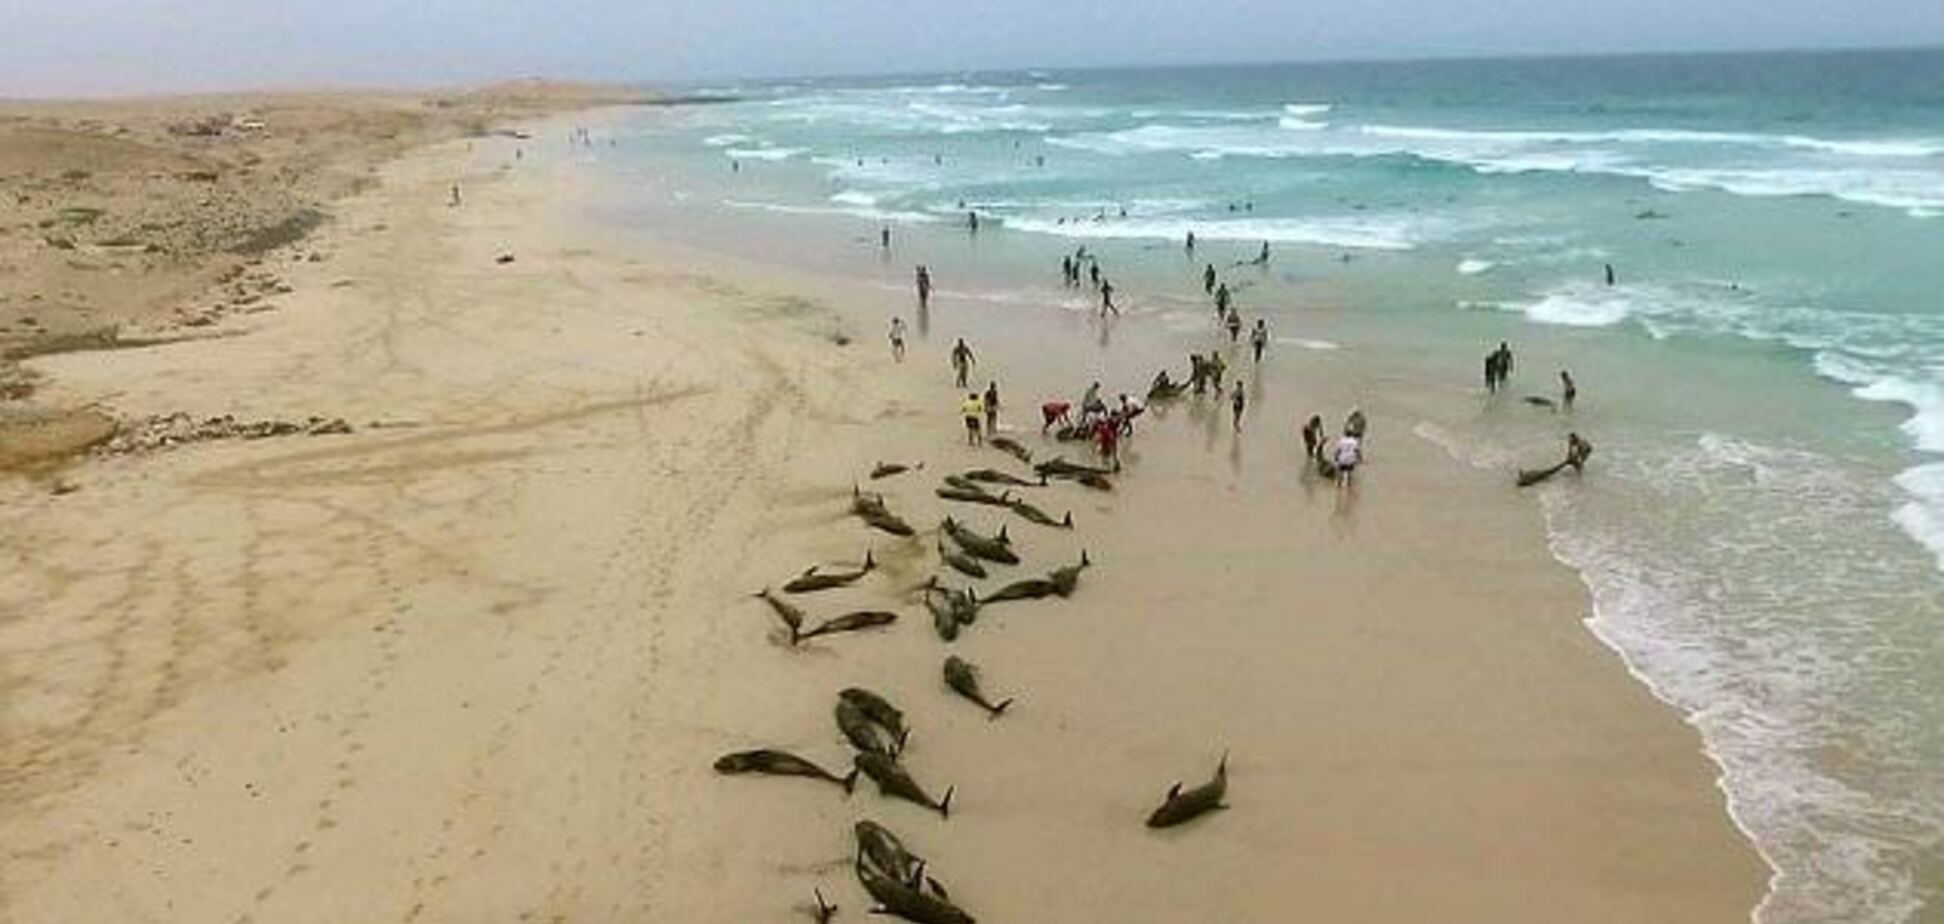 Выбросившиеся дельфины на пляже в Кабо Верде